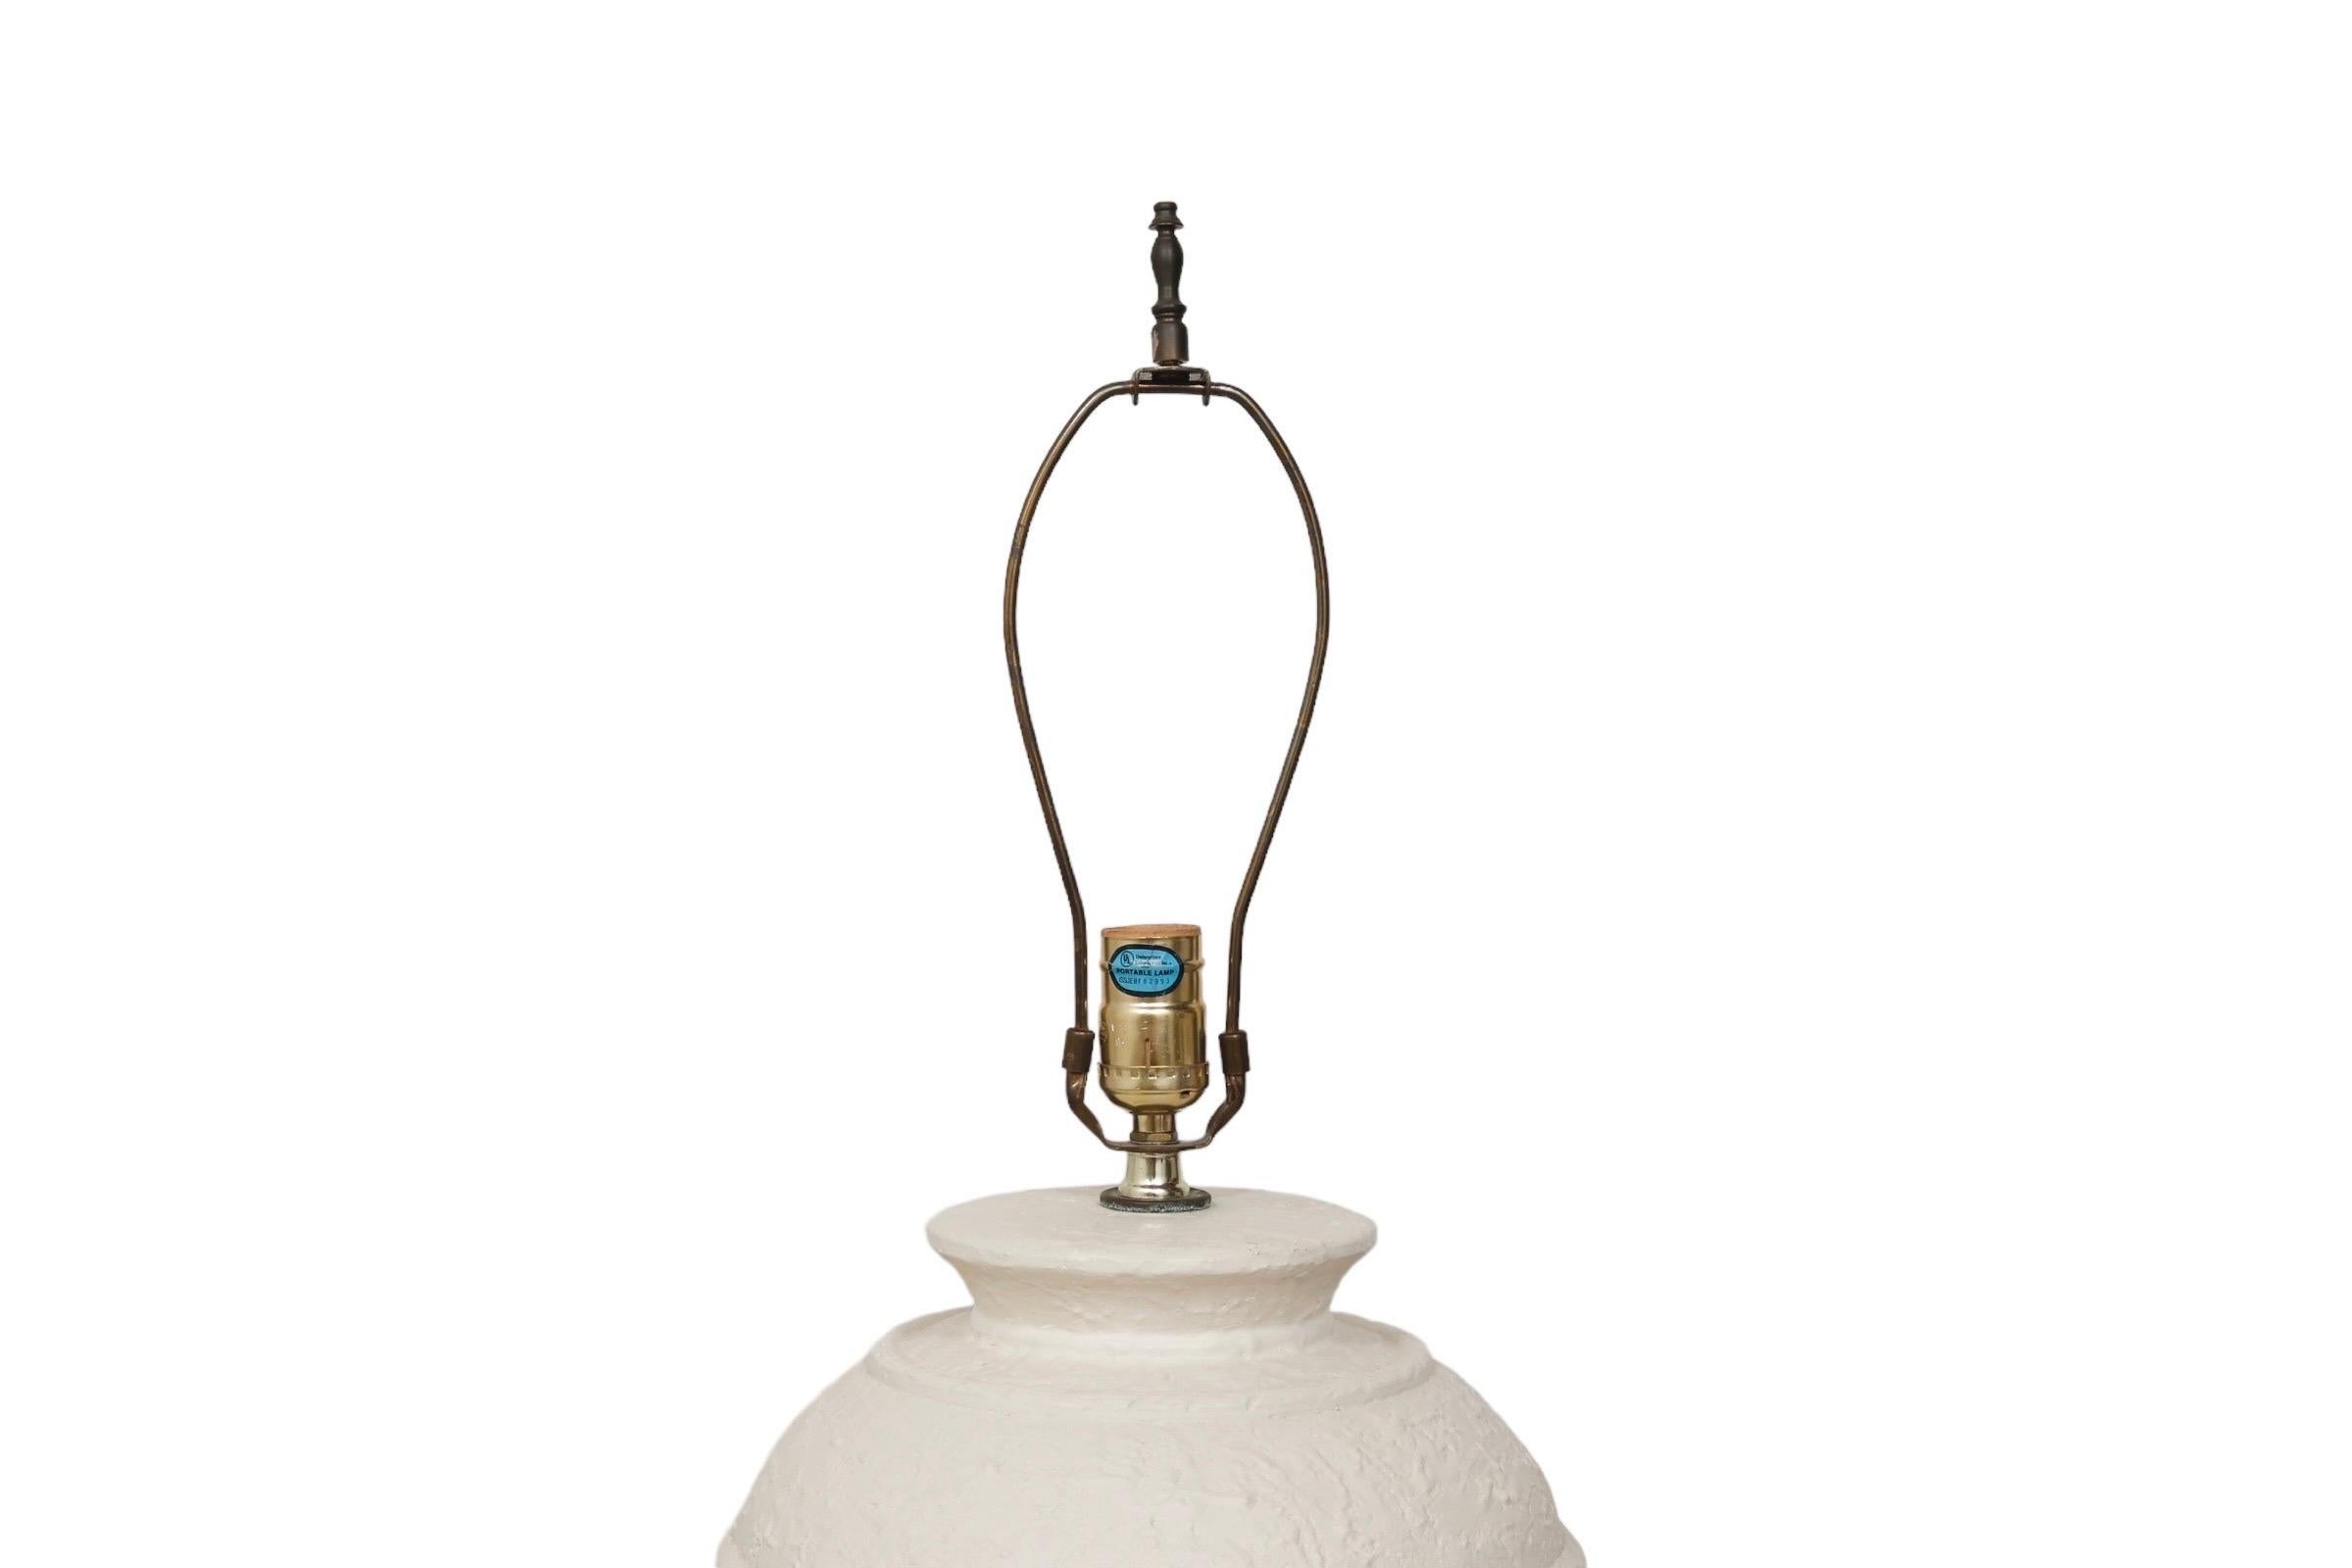 Lampe de table postmoderne en forme d'urne datant des années 1980, fabriquée par Alsy. Finition en plâtre texturé crème avec anneaux biseautés autour du corps et de la base. Mesure 18 